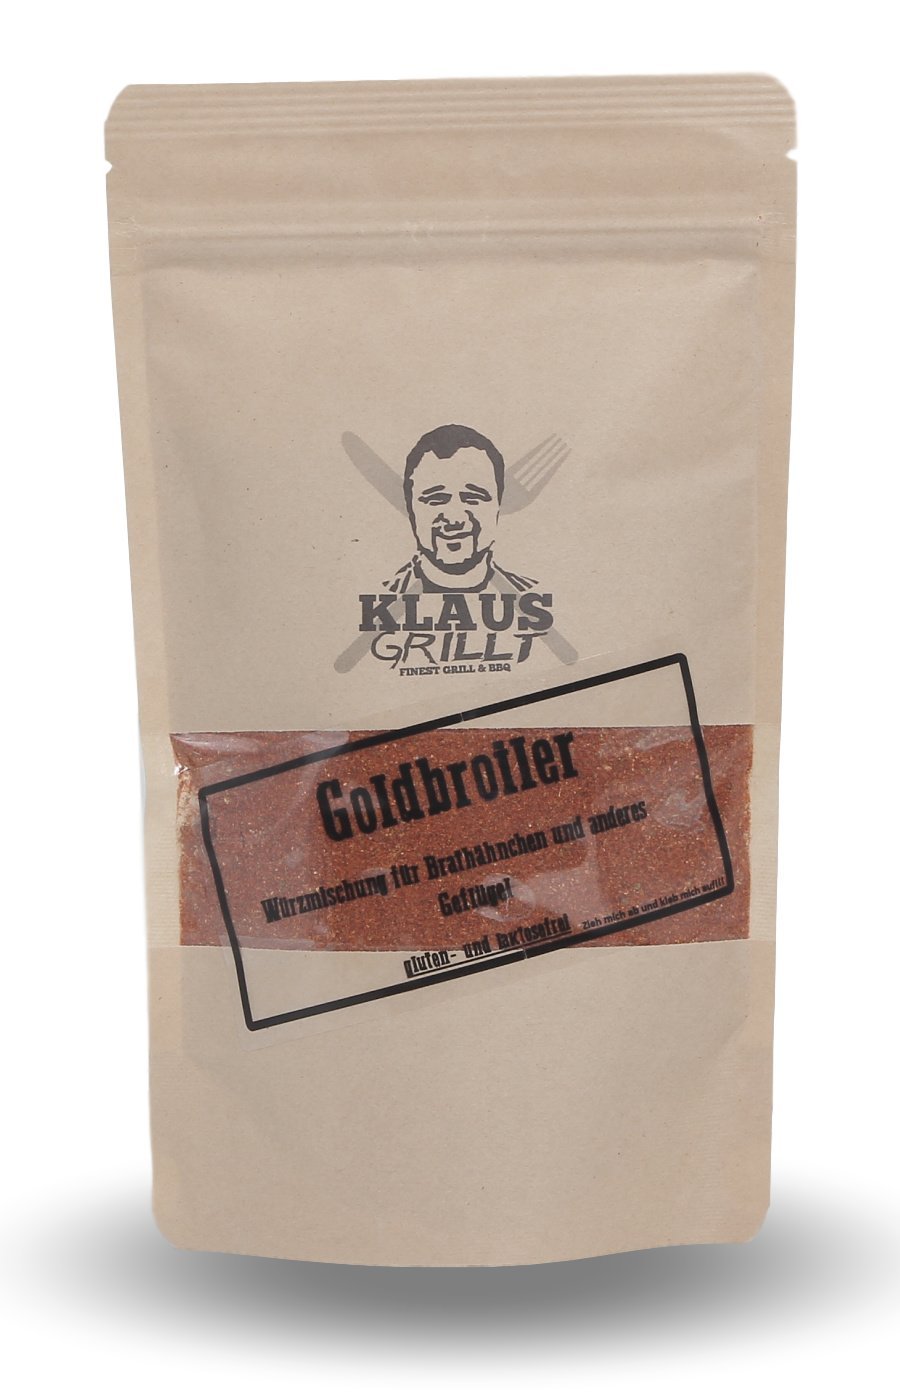 Goldbroiler 250g Beutel 